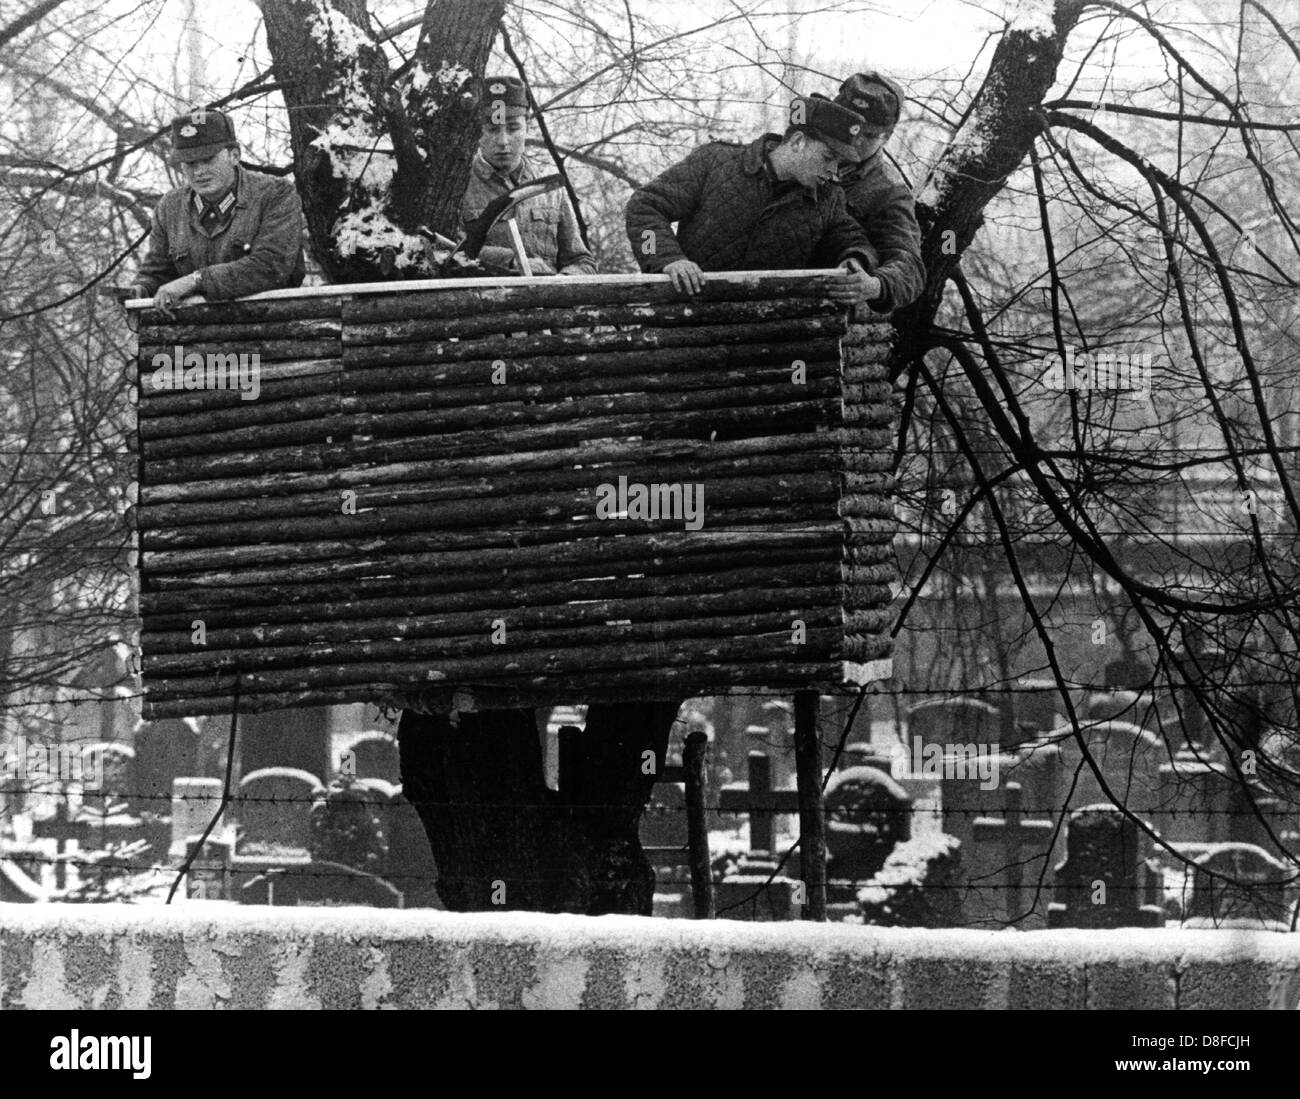 Rdt le forze di polizia errect una torre di avvistamento su un cimitero di Berlino Est, REPUBBLICA DEMOCRATICA TEDESCA, nel 1961. Foto Stock